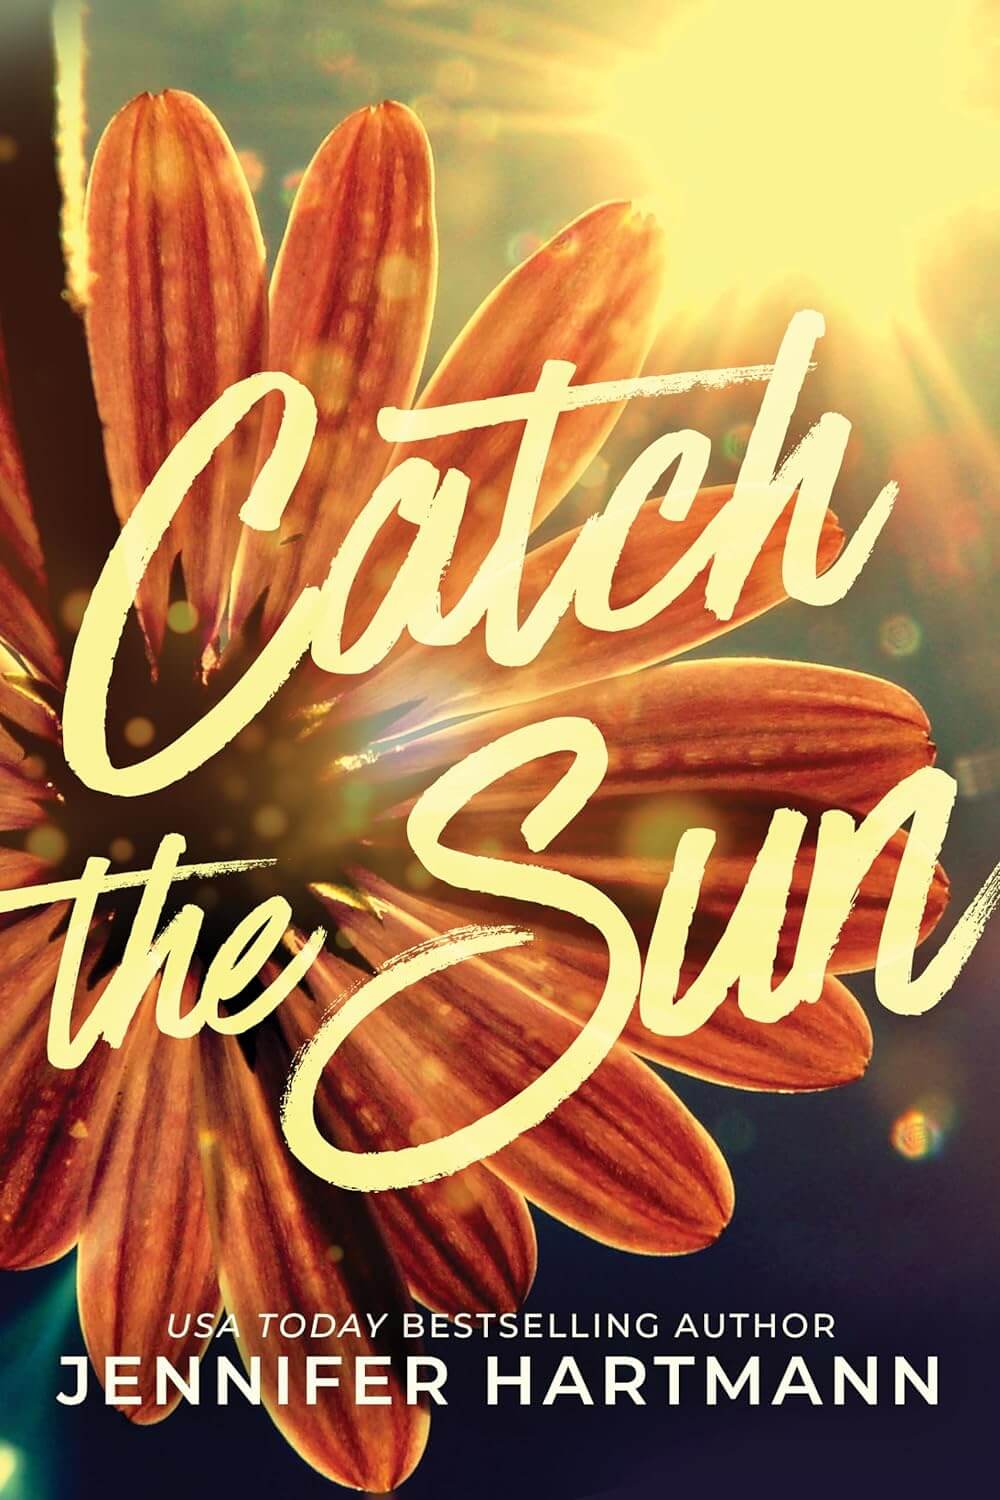 Catch the Sun